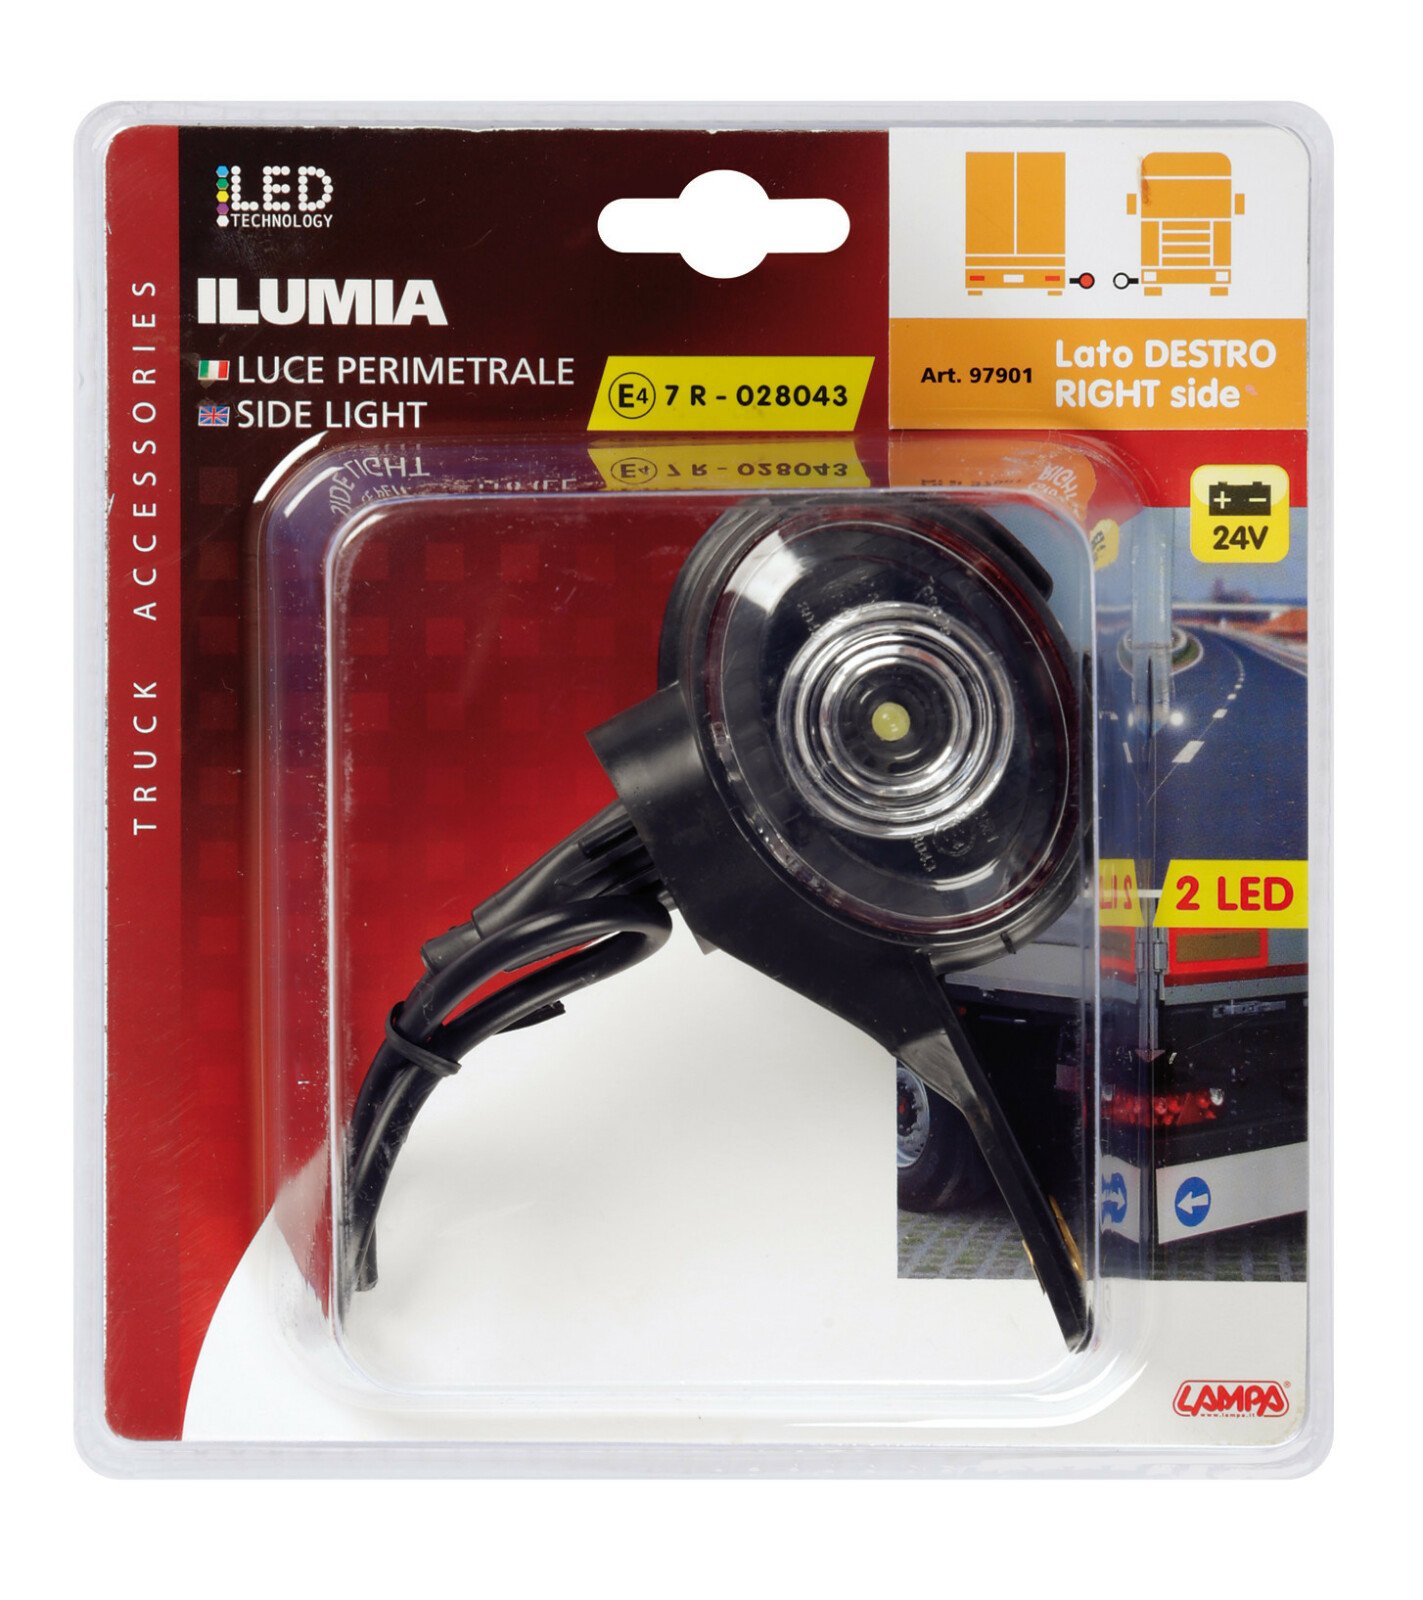 Ilumia 2 LED-es méret helyzetjelző kamionra - 24V - Fehér/Piros - Jobb oldali thumb